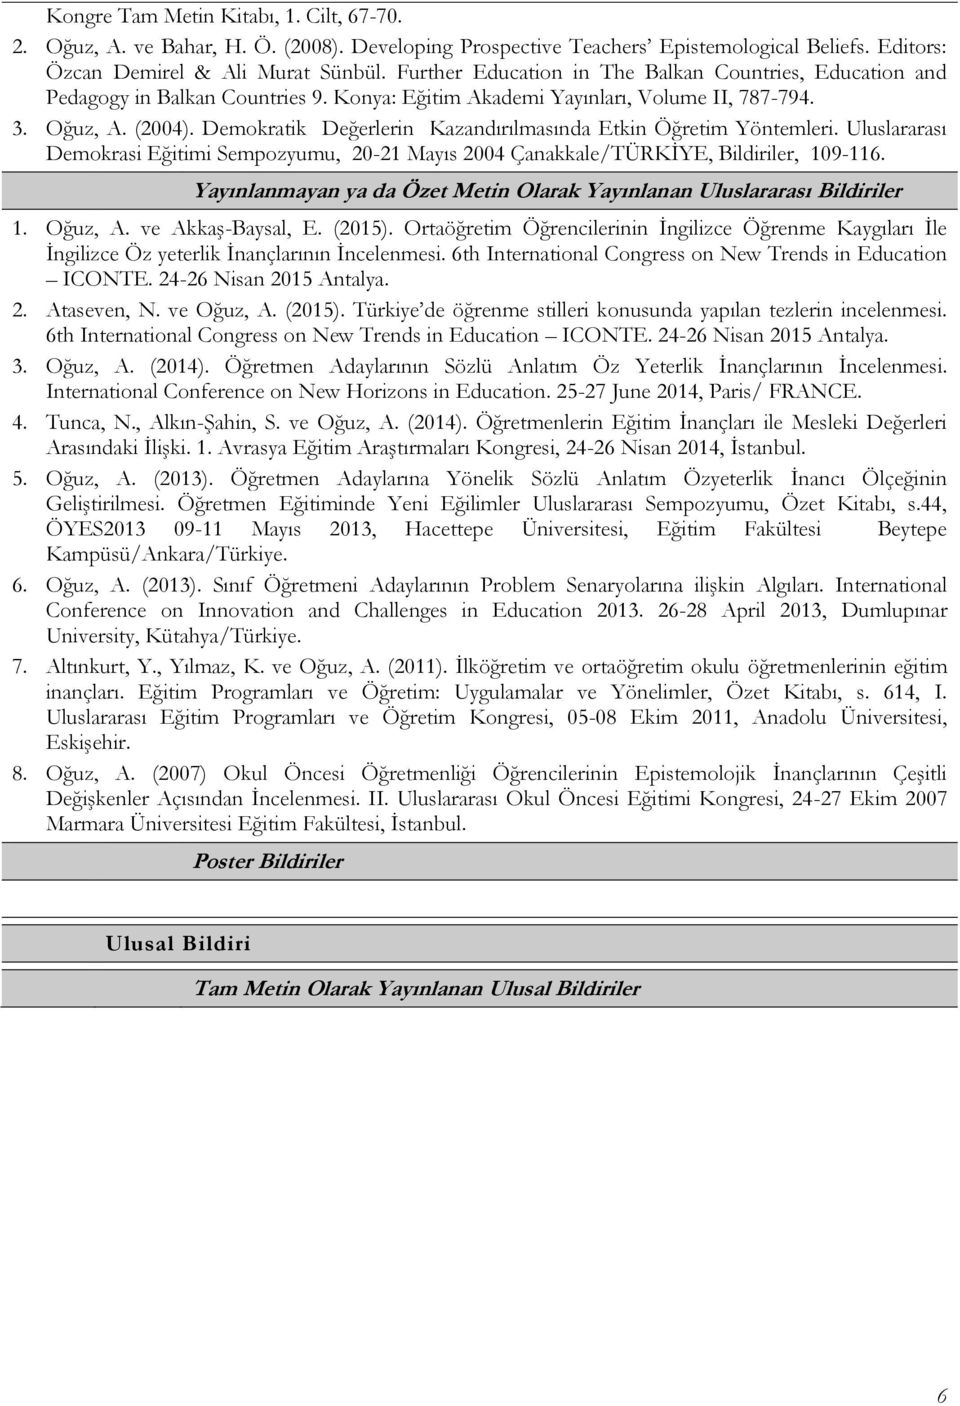 Demokratik Değerlerin Kazandırılmasında Etkin Öğretim Yöntemleri. Uluslararası Demokrasi Eğitimi Sempozyumu, 20-21 Mayıs 2004 Çanakkale/TÜRKİYE, Bildiriler, 109-116.